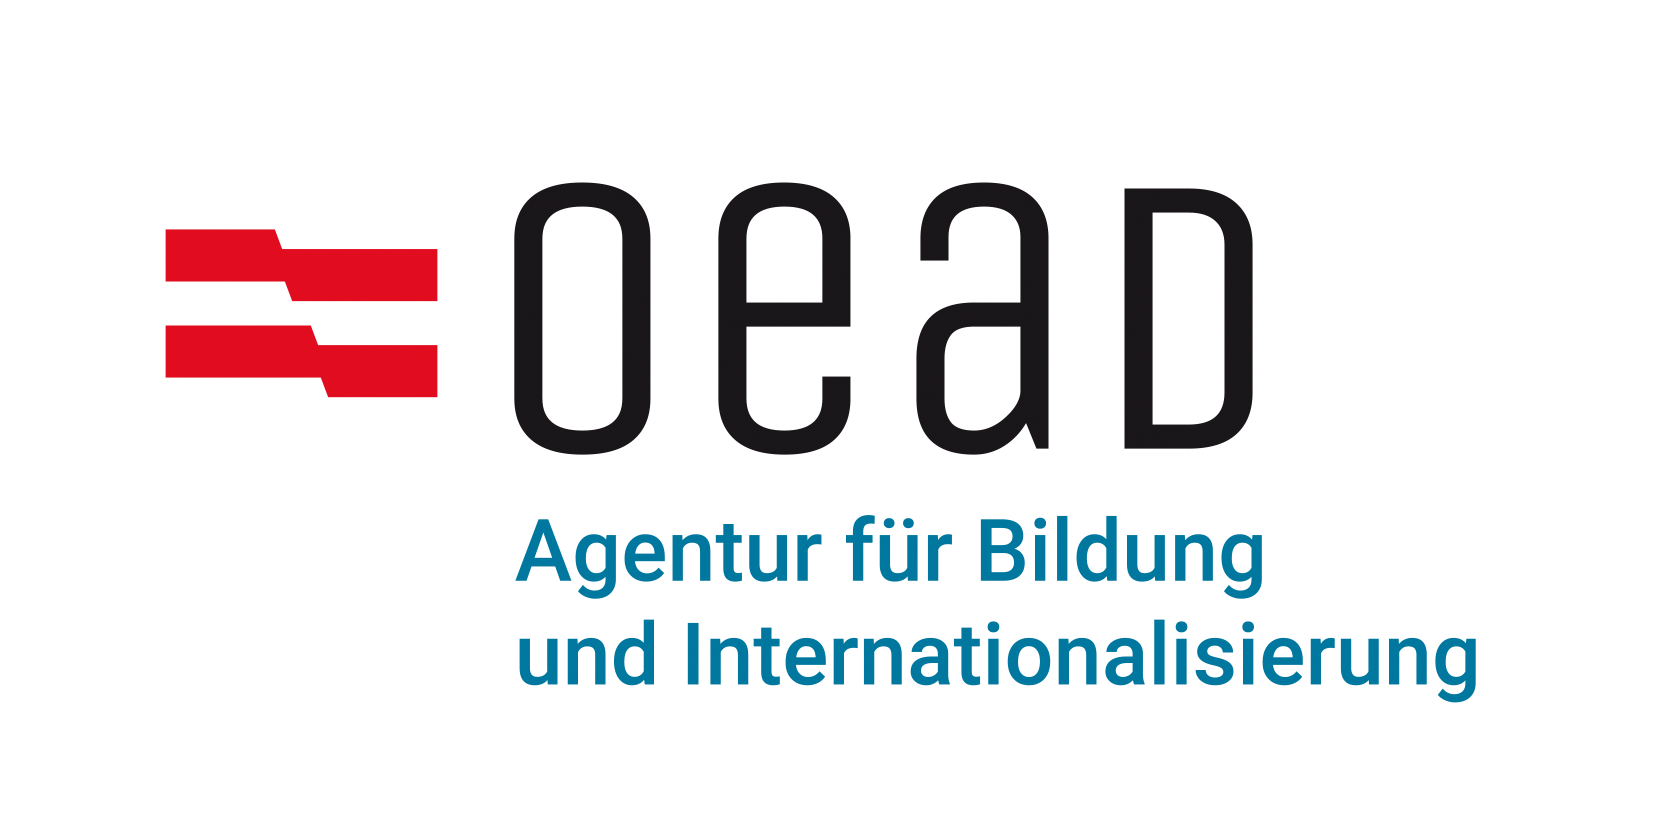 OeAD-GmbH – Agentur für Bildung und Internationalisierung